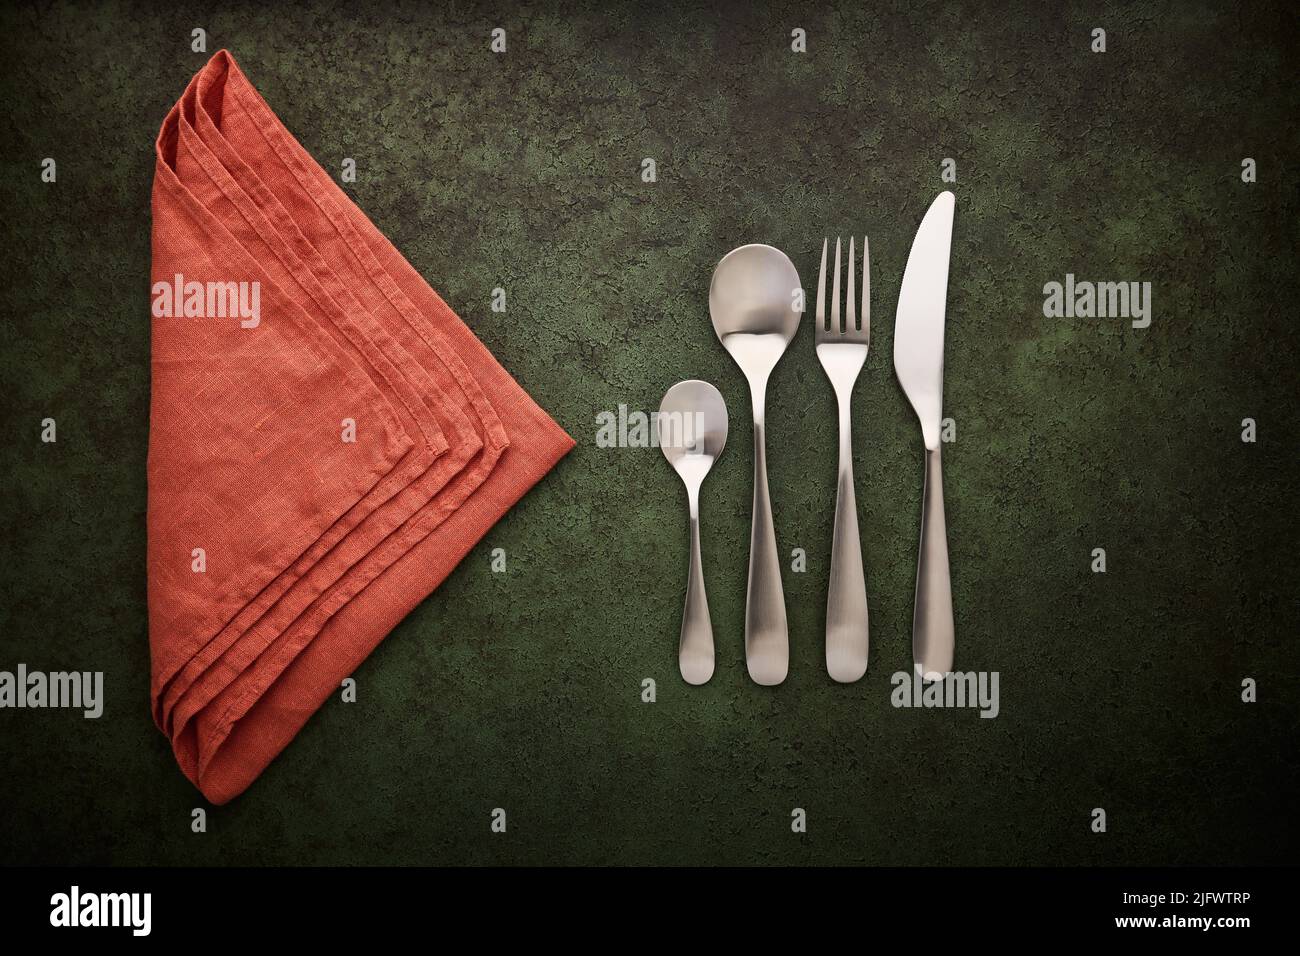 Un juego de cubertería y servilleta de lino de terracota sobre un fondo verde oscuro. Cucharas, tenedor y cuchillo, puesta plana Foto de stock